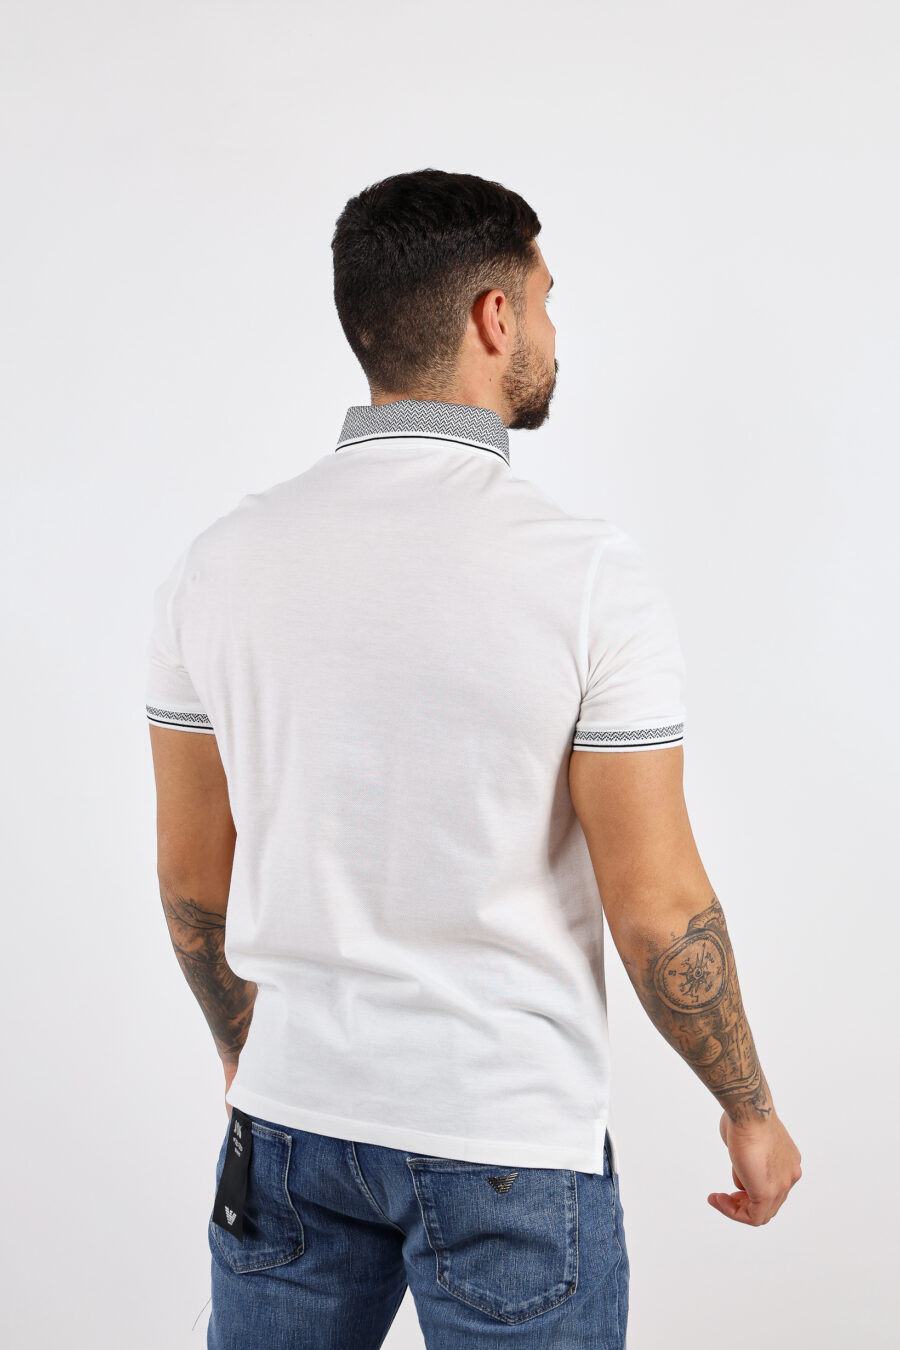 Weißes Poloshirt mit klassischem grauem Kragen - BLS Fashion 44